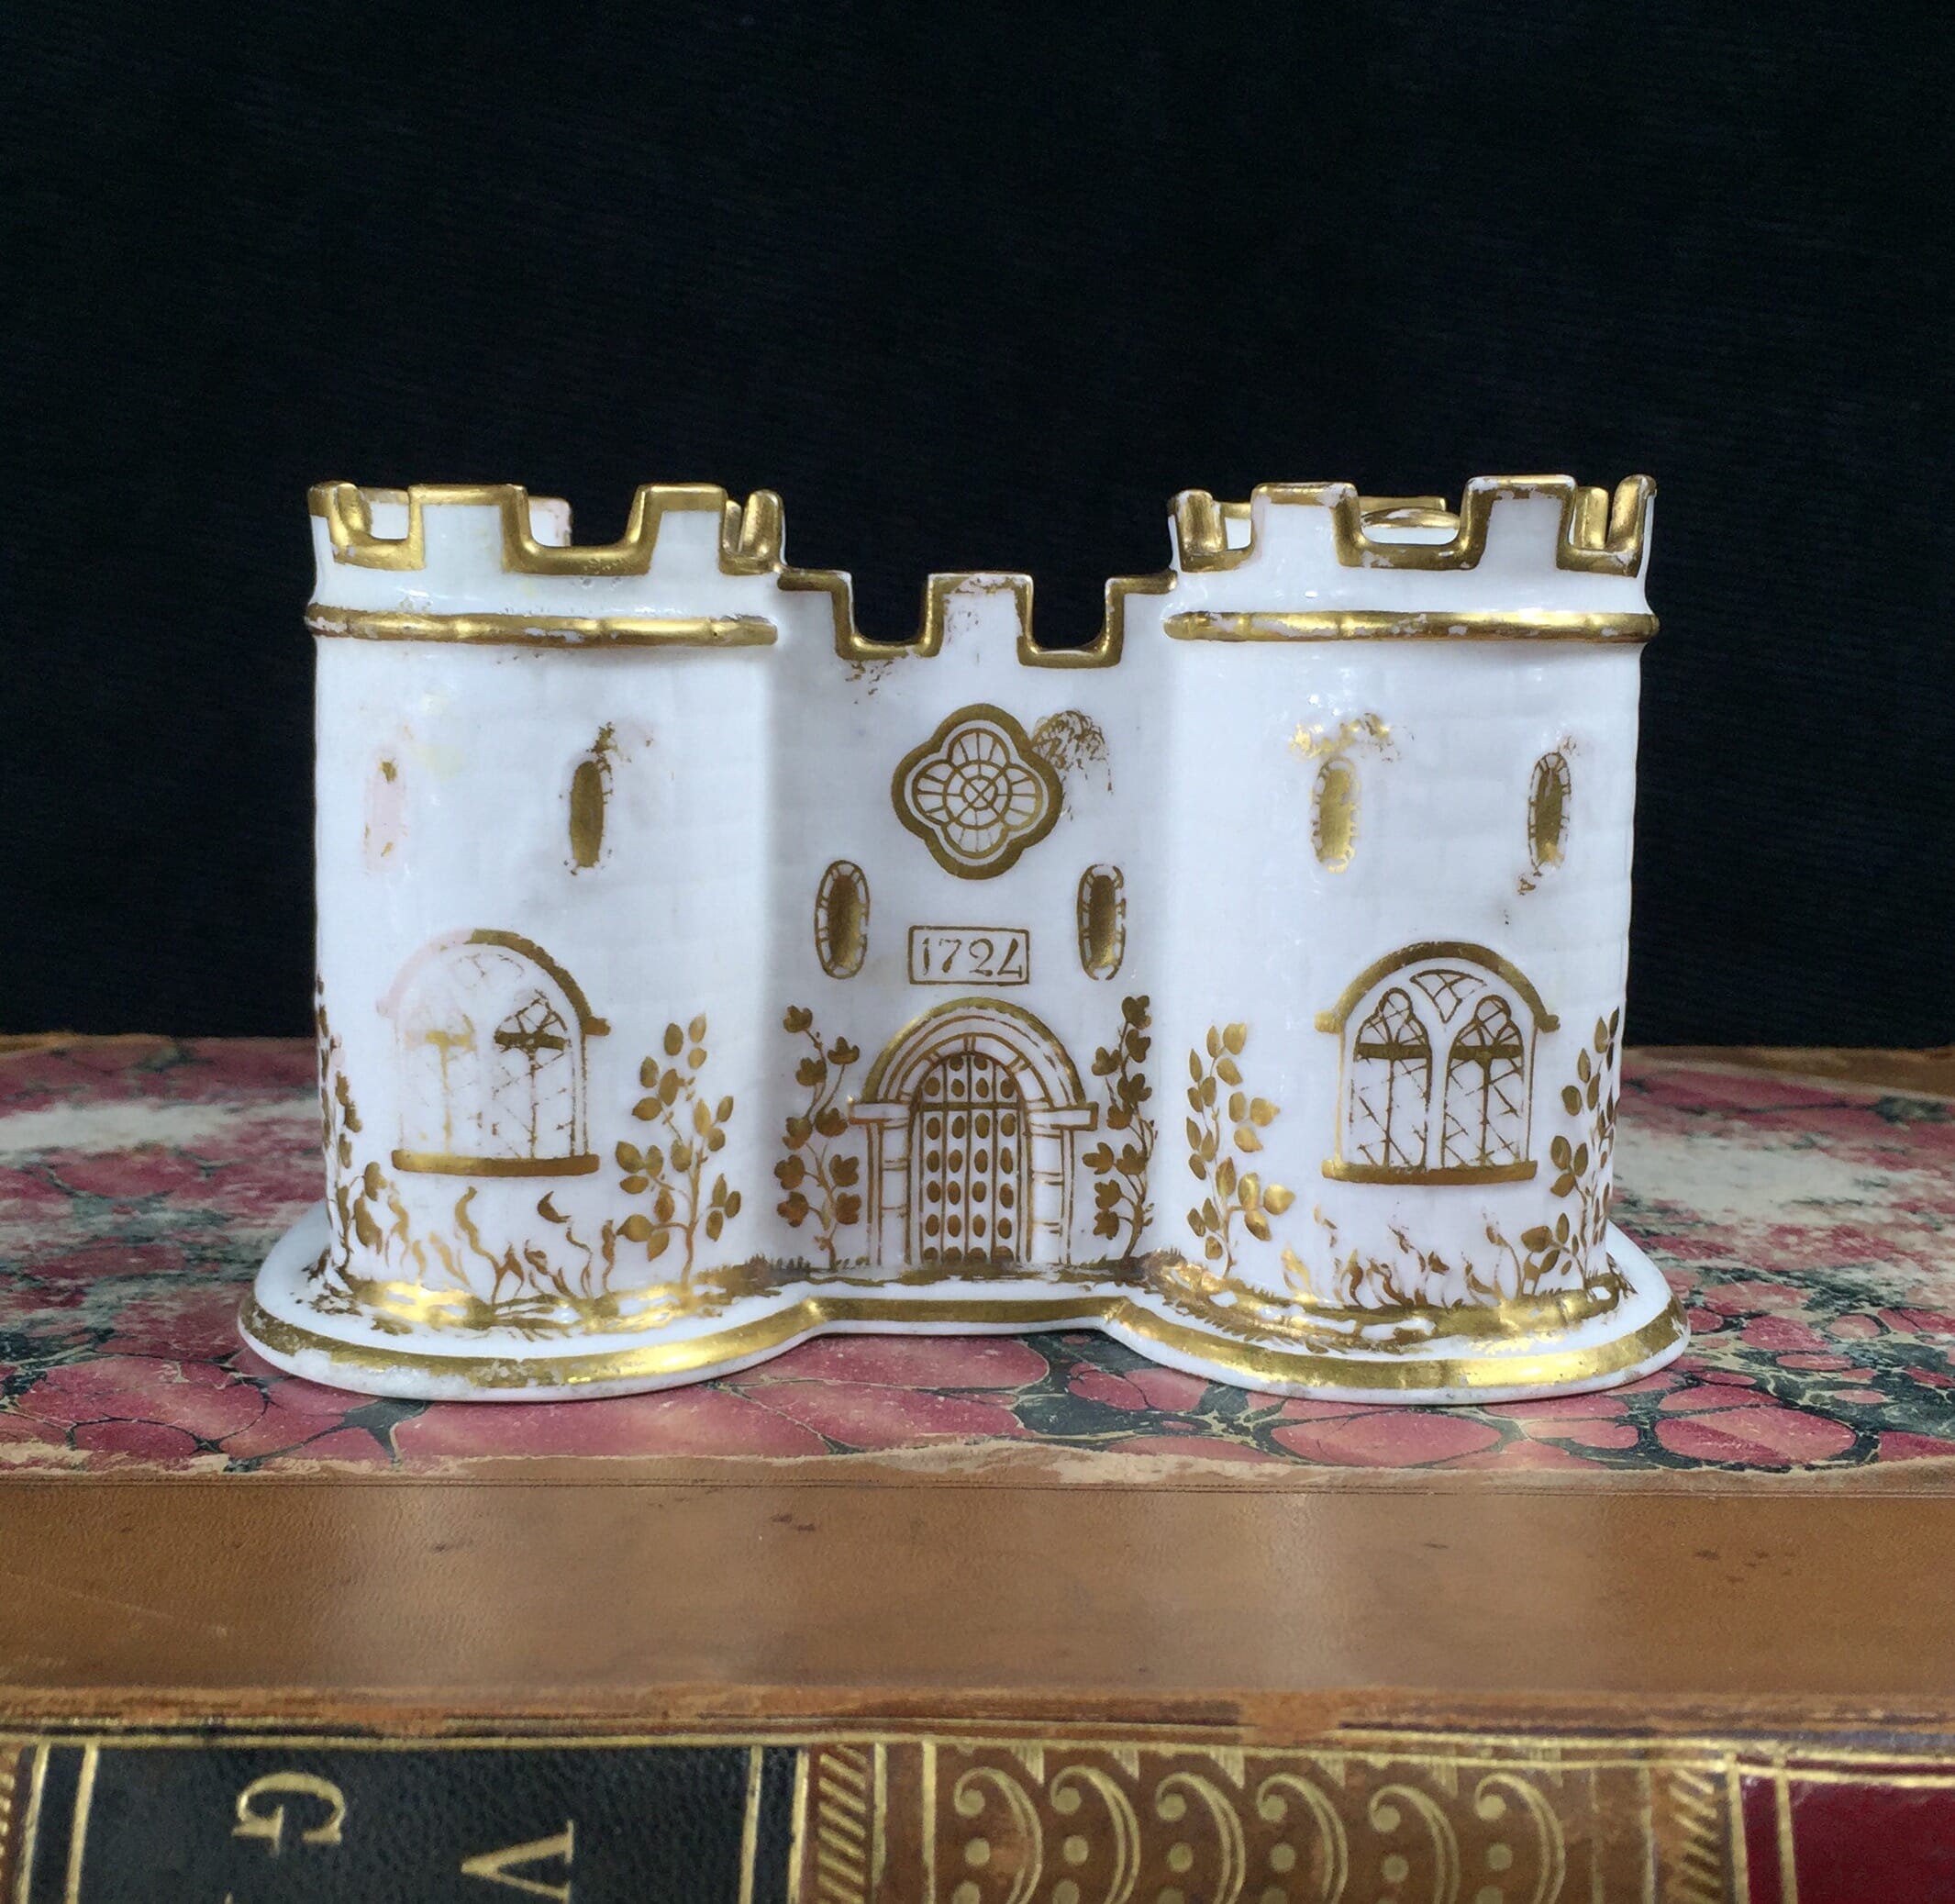 Minton Castle deskset, bone china c. 1830-0